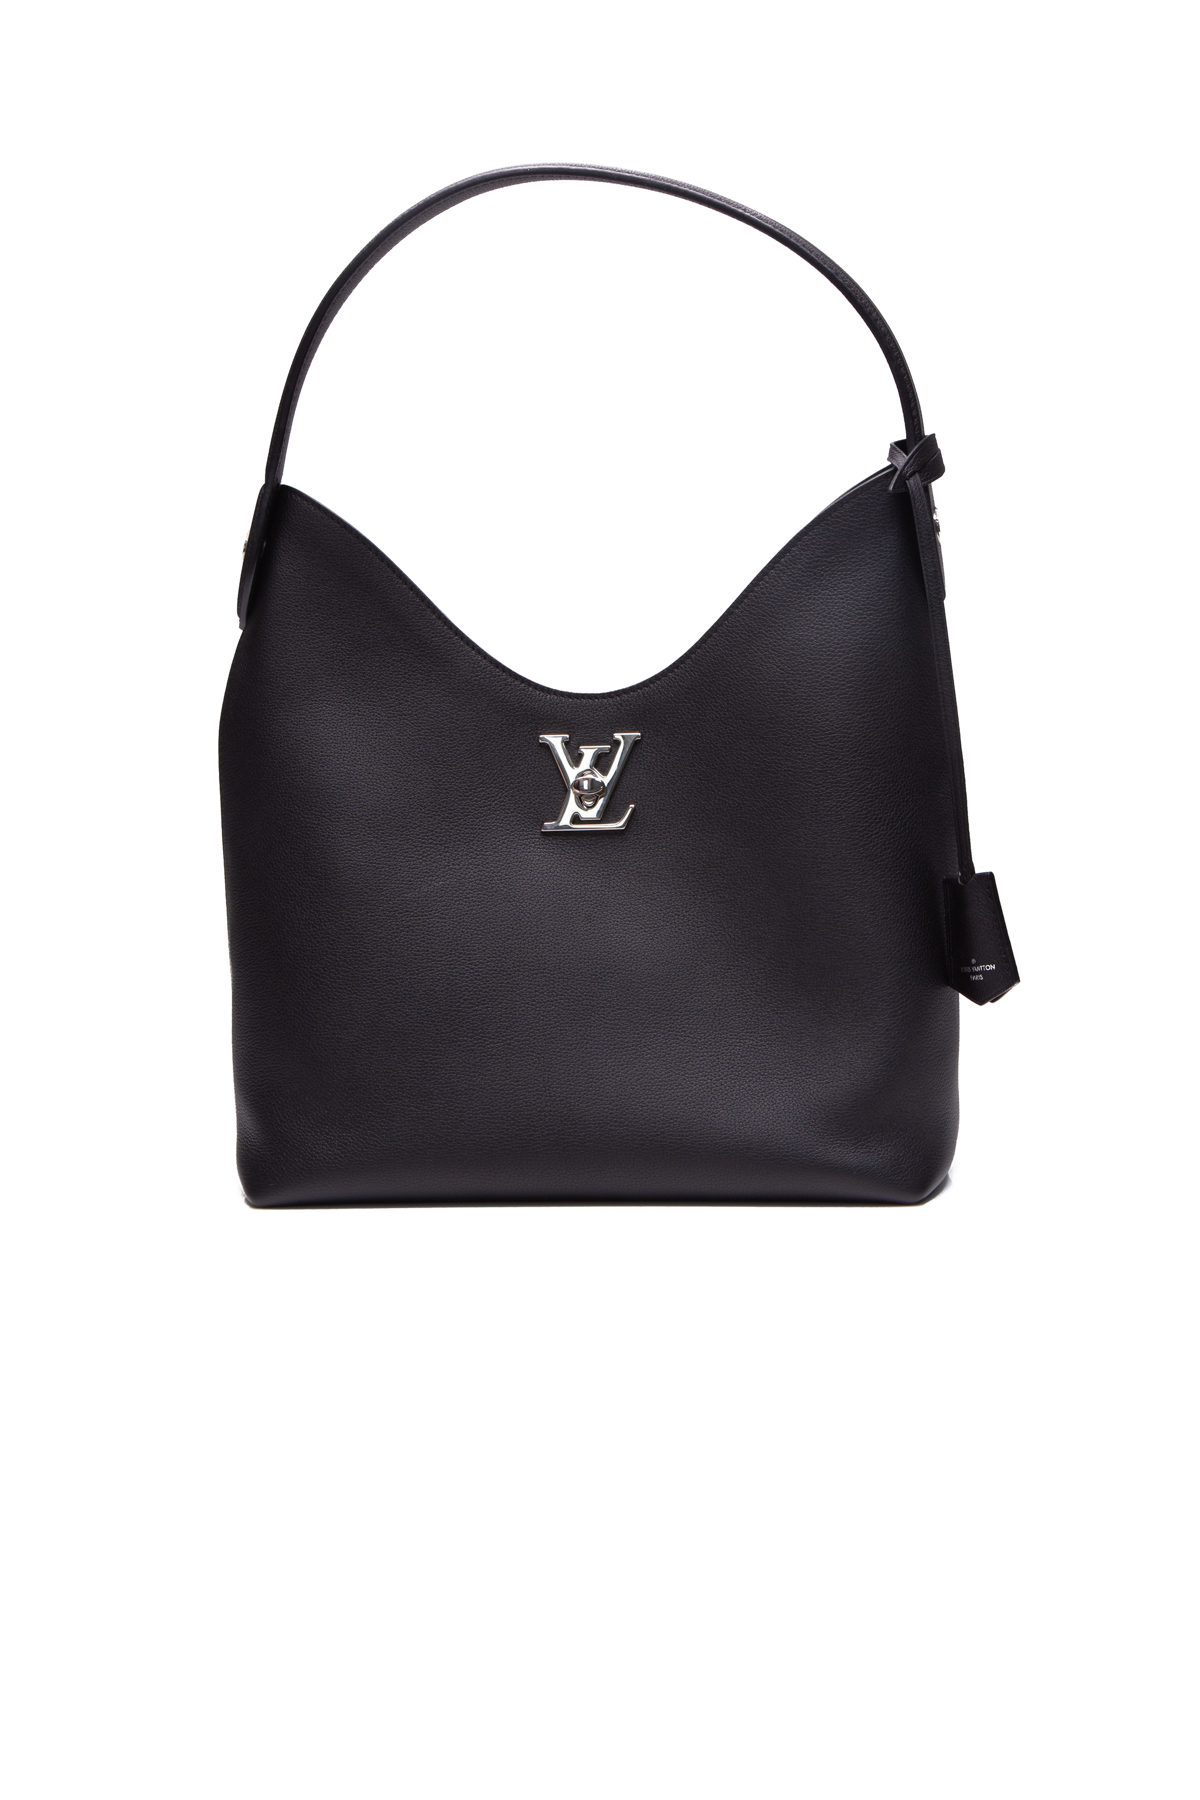 Louis Vuitton Lockme Hobo Bag - Couture USA